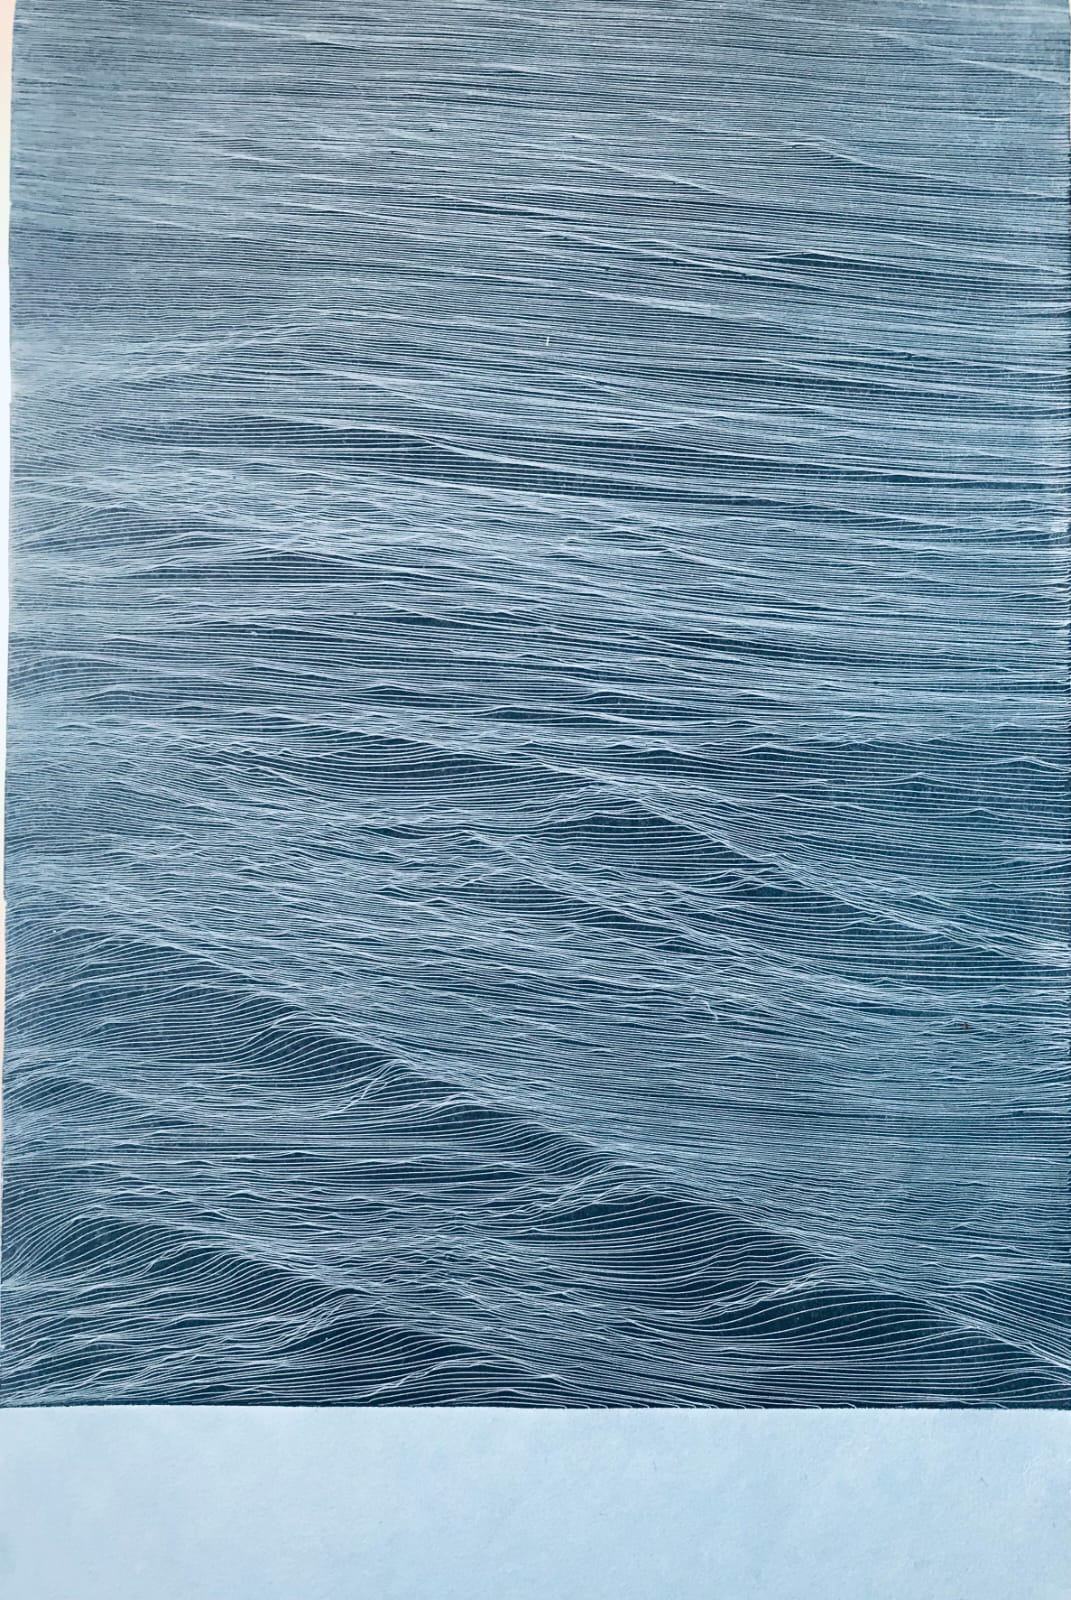 JE Mar Negro Azul 2022 Ed PA.25 37x24 cm Etching on Hahnemuhle 350 gr paper Pigment Gallery Galería de Arte en Barcelona Juan Escudero